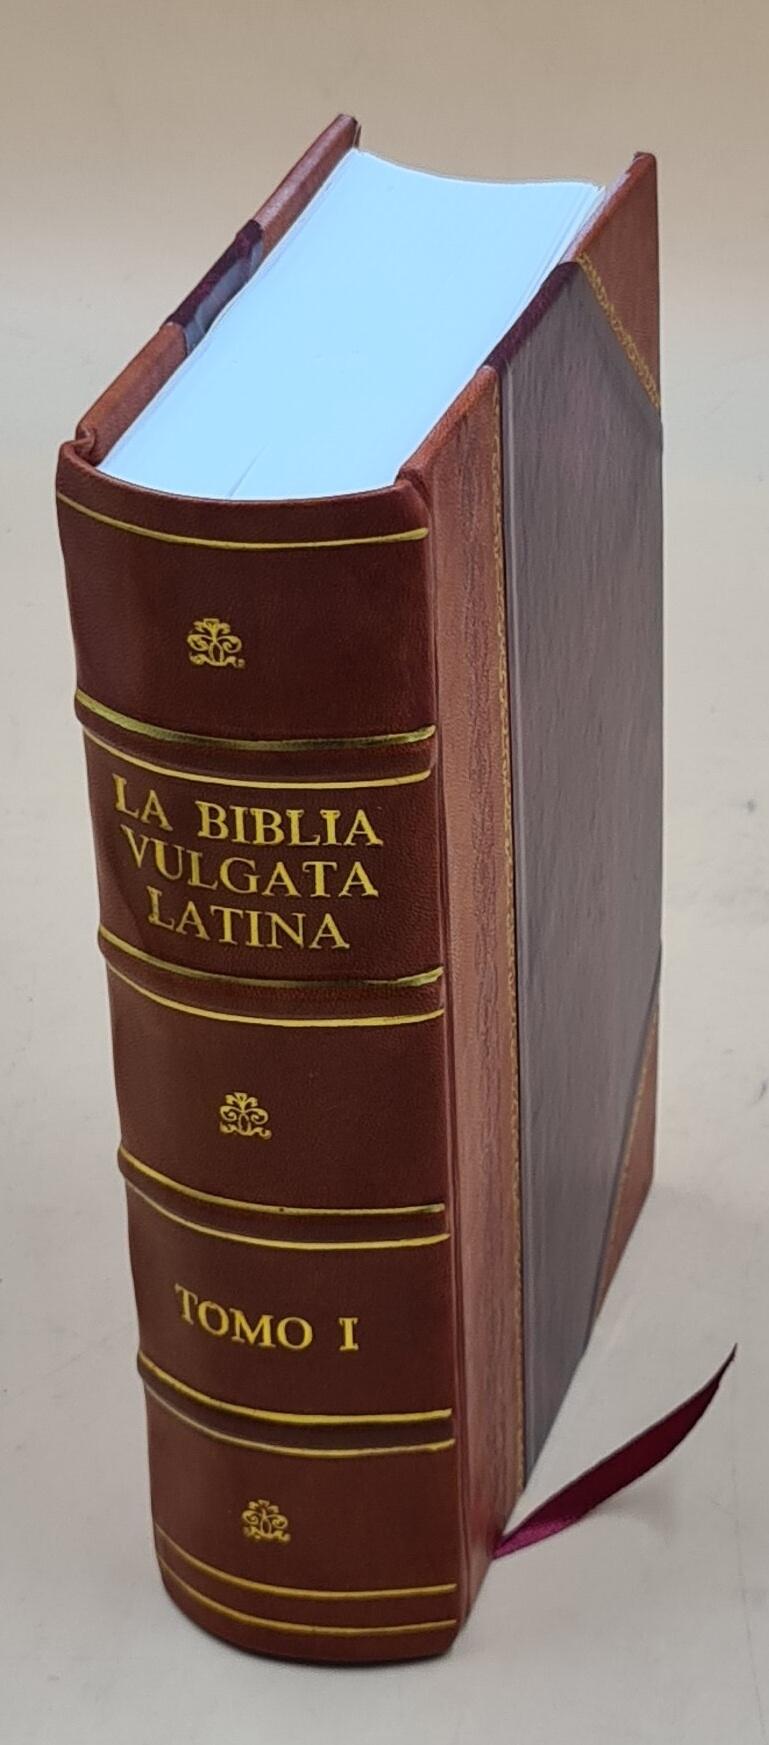 La Biblia Vulgata Latina traducia en Espanõl: y anotada conforme al sentido de los santos padres...